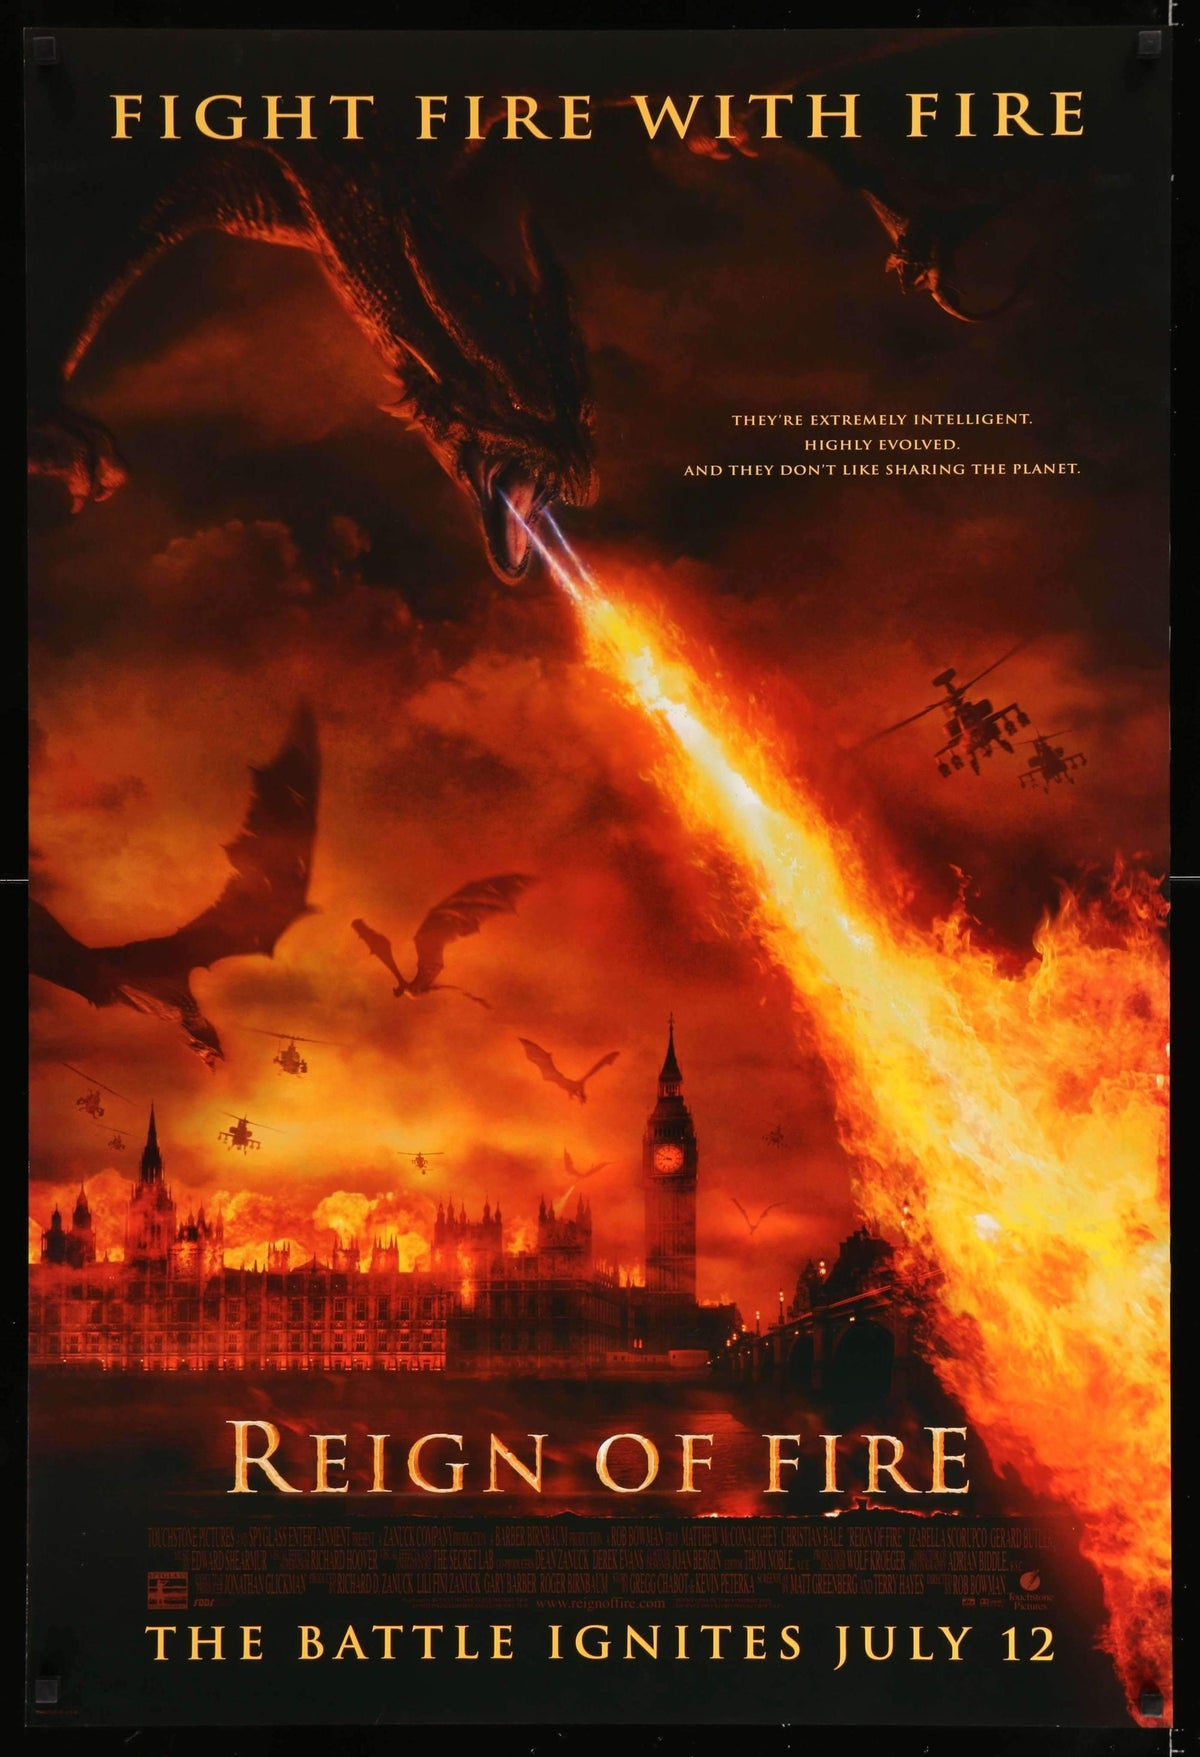 Reign of Fire (2002) original movie poster for sale at Original Film Art